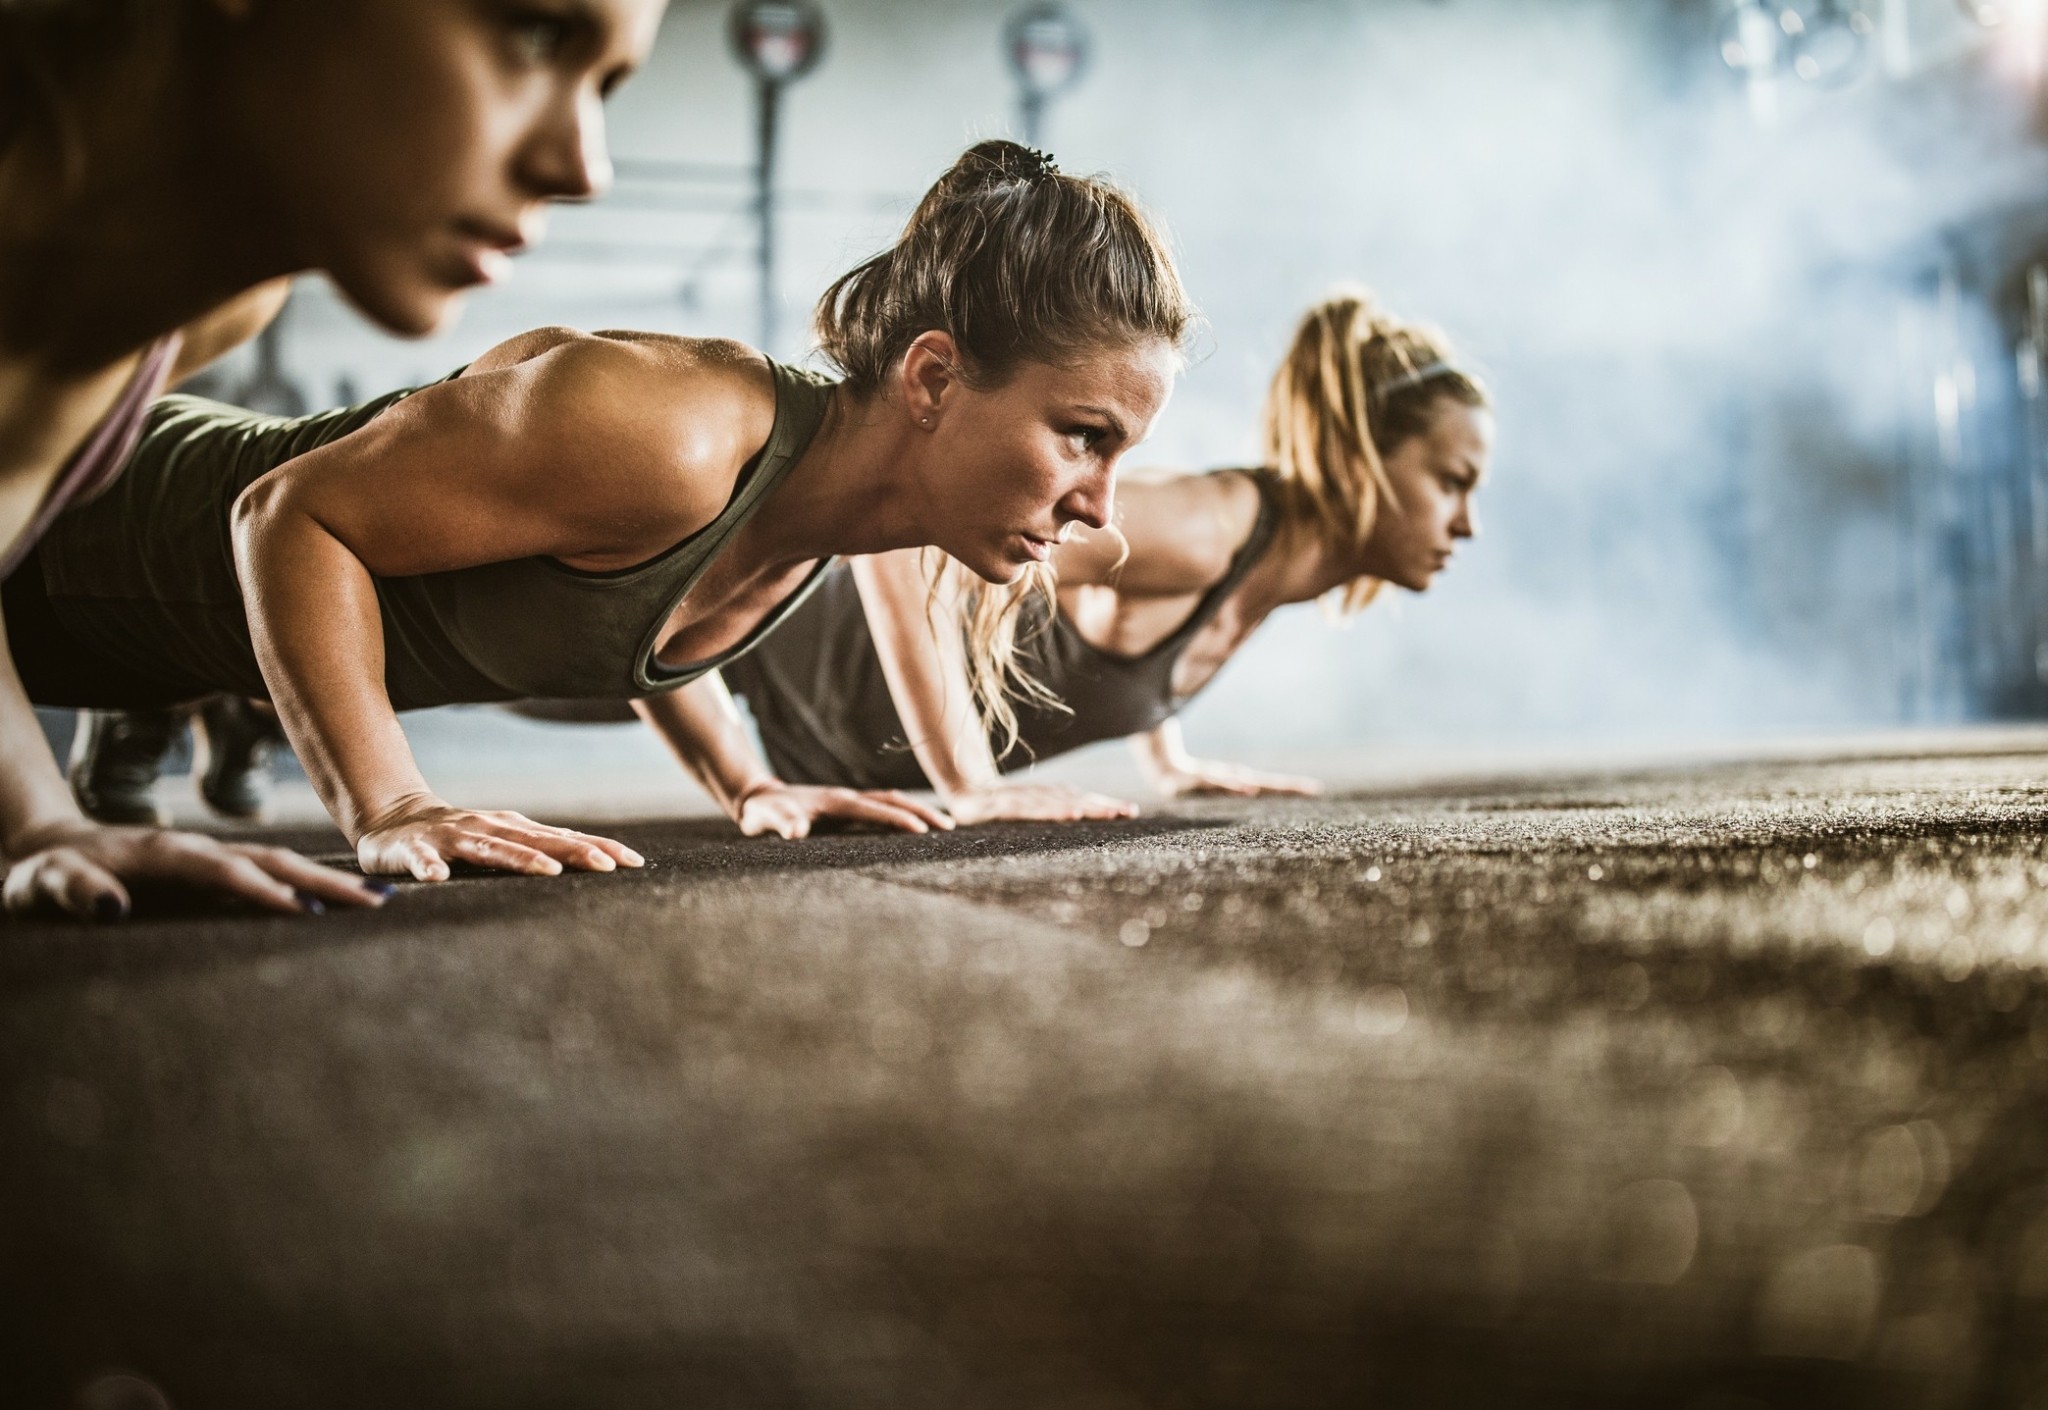 Τι συμβαίνει στο σώμα αν κάνουμε 200 push-ups την ημέρα, για 1 μήνα